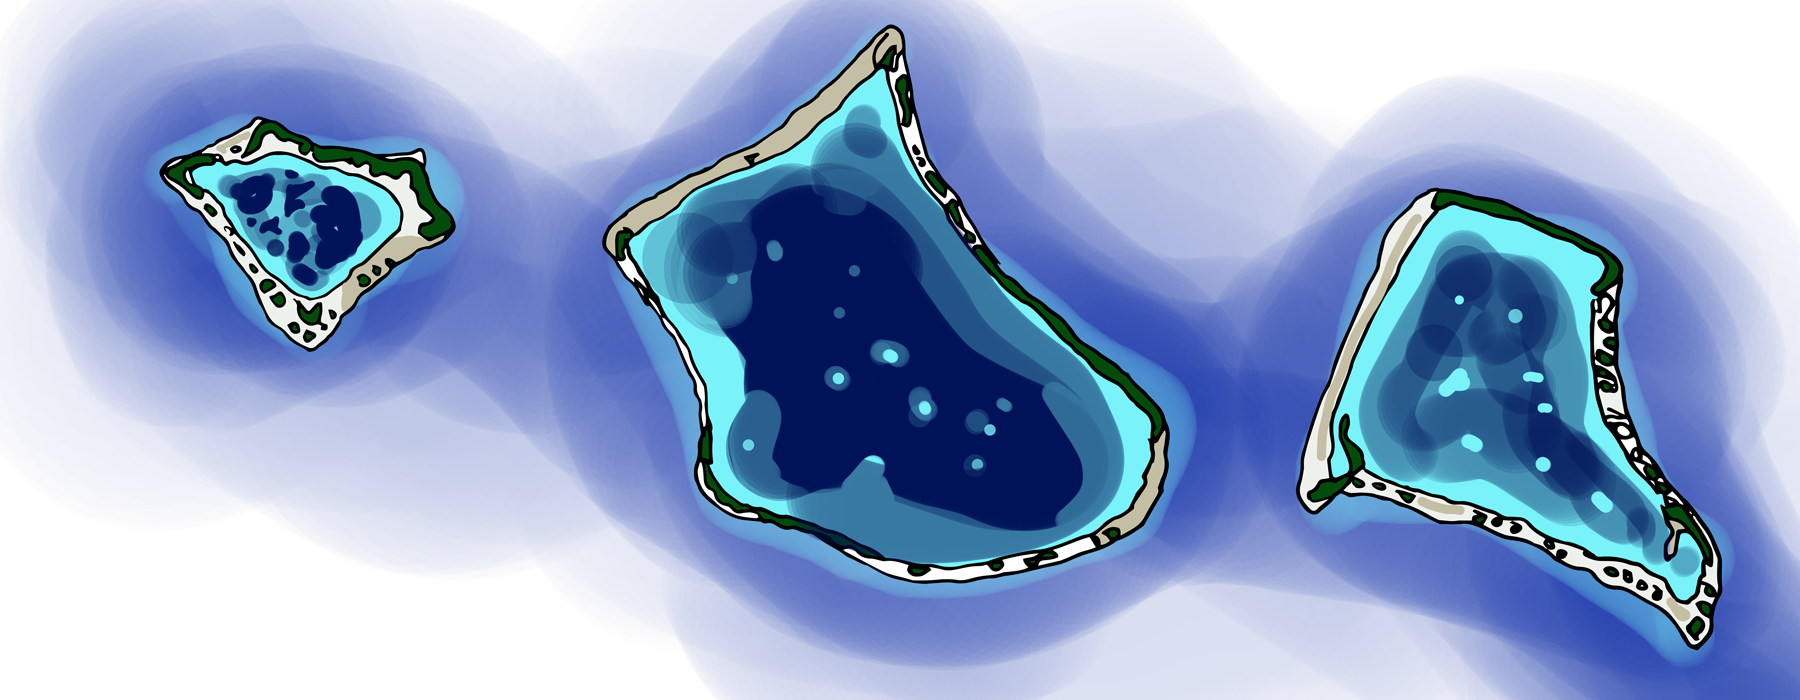 Illustration of Tokelau's atolls